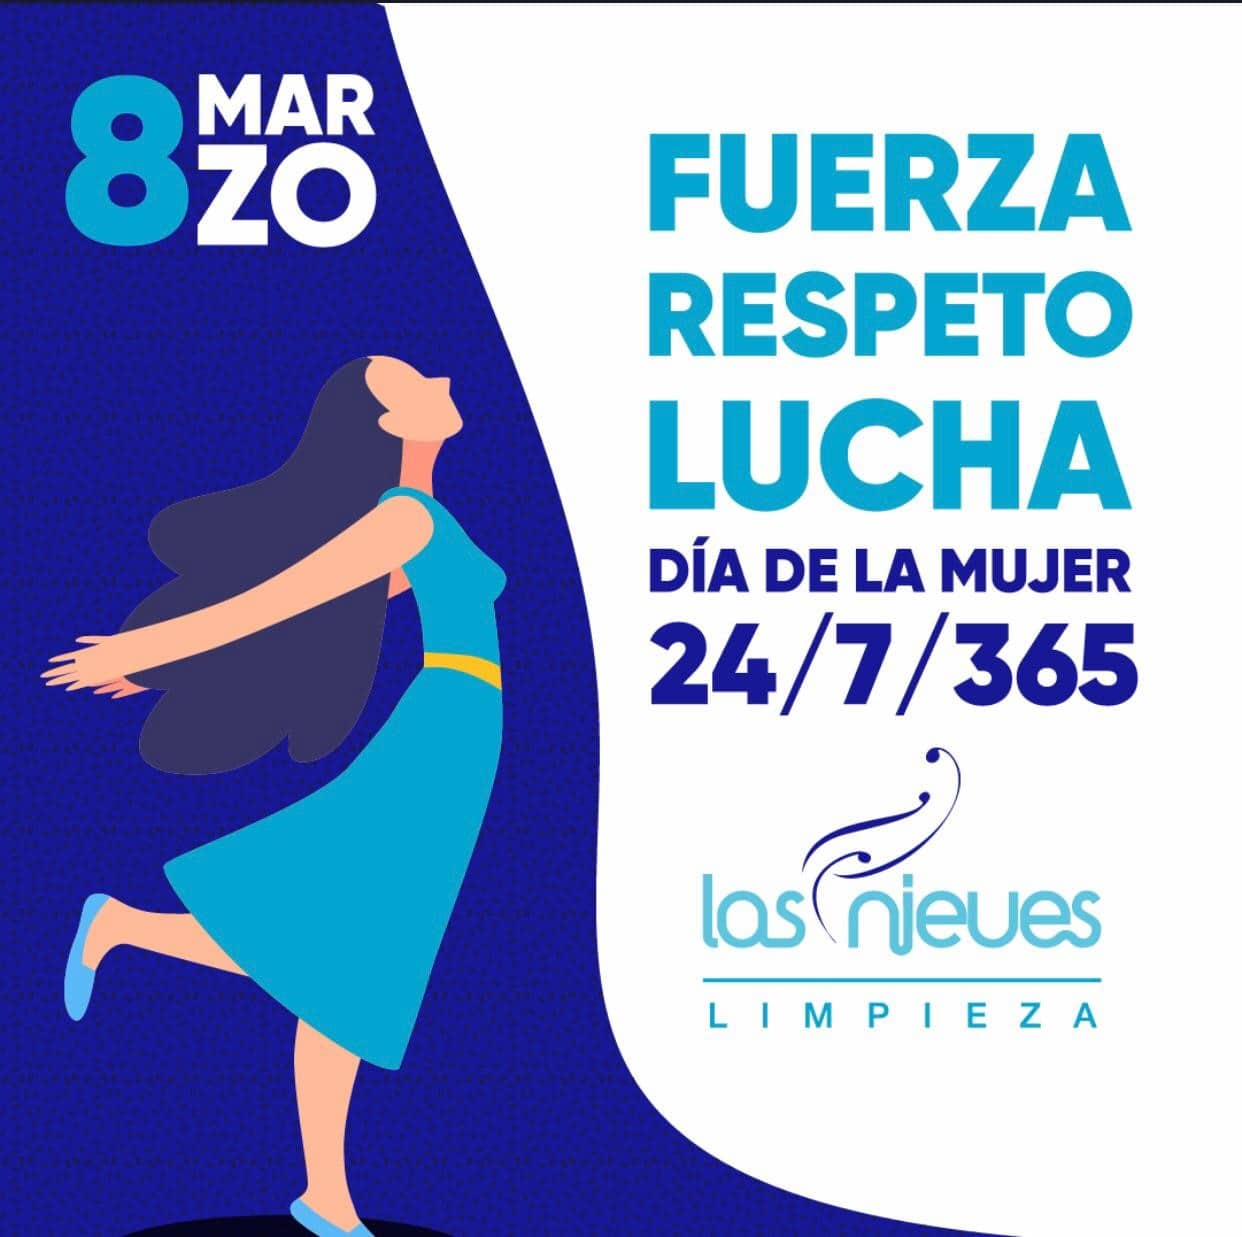 Póster del dia de la mujer para mostrar el apoyo de Las Nieves a las mujeres